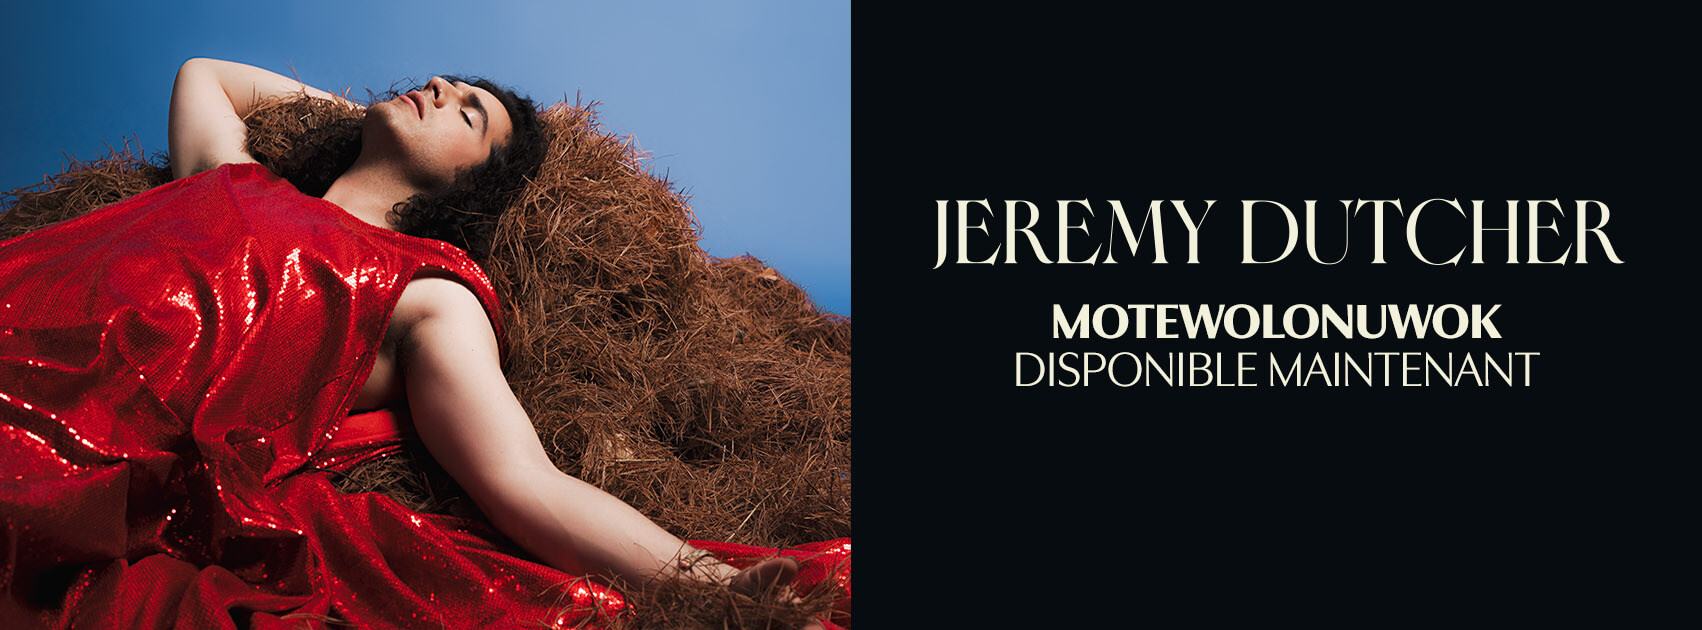 JeremyDutcher-Album-SCRWebsite-FR